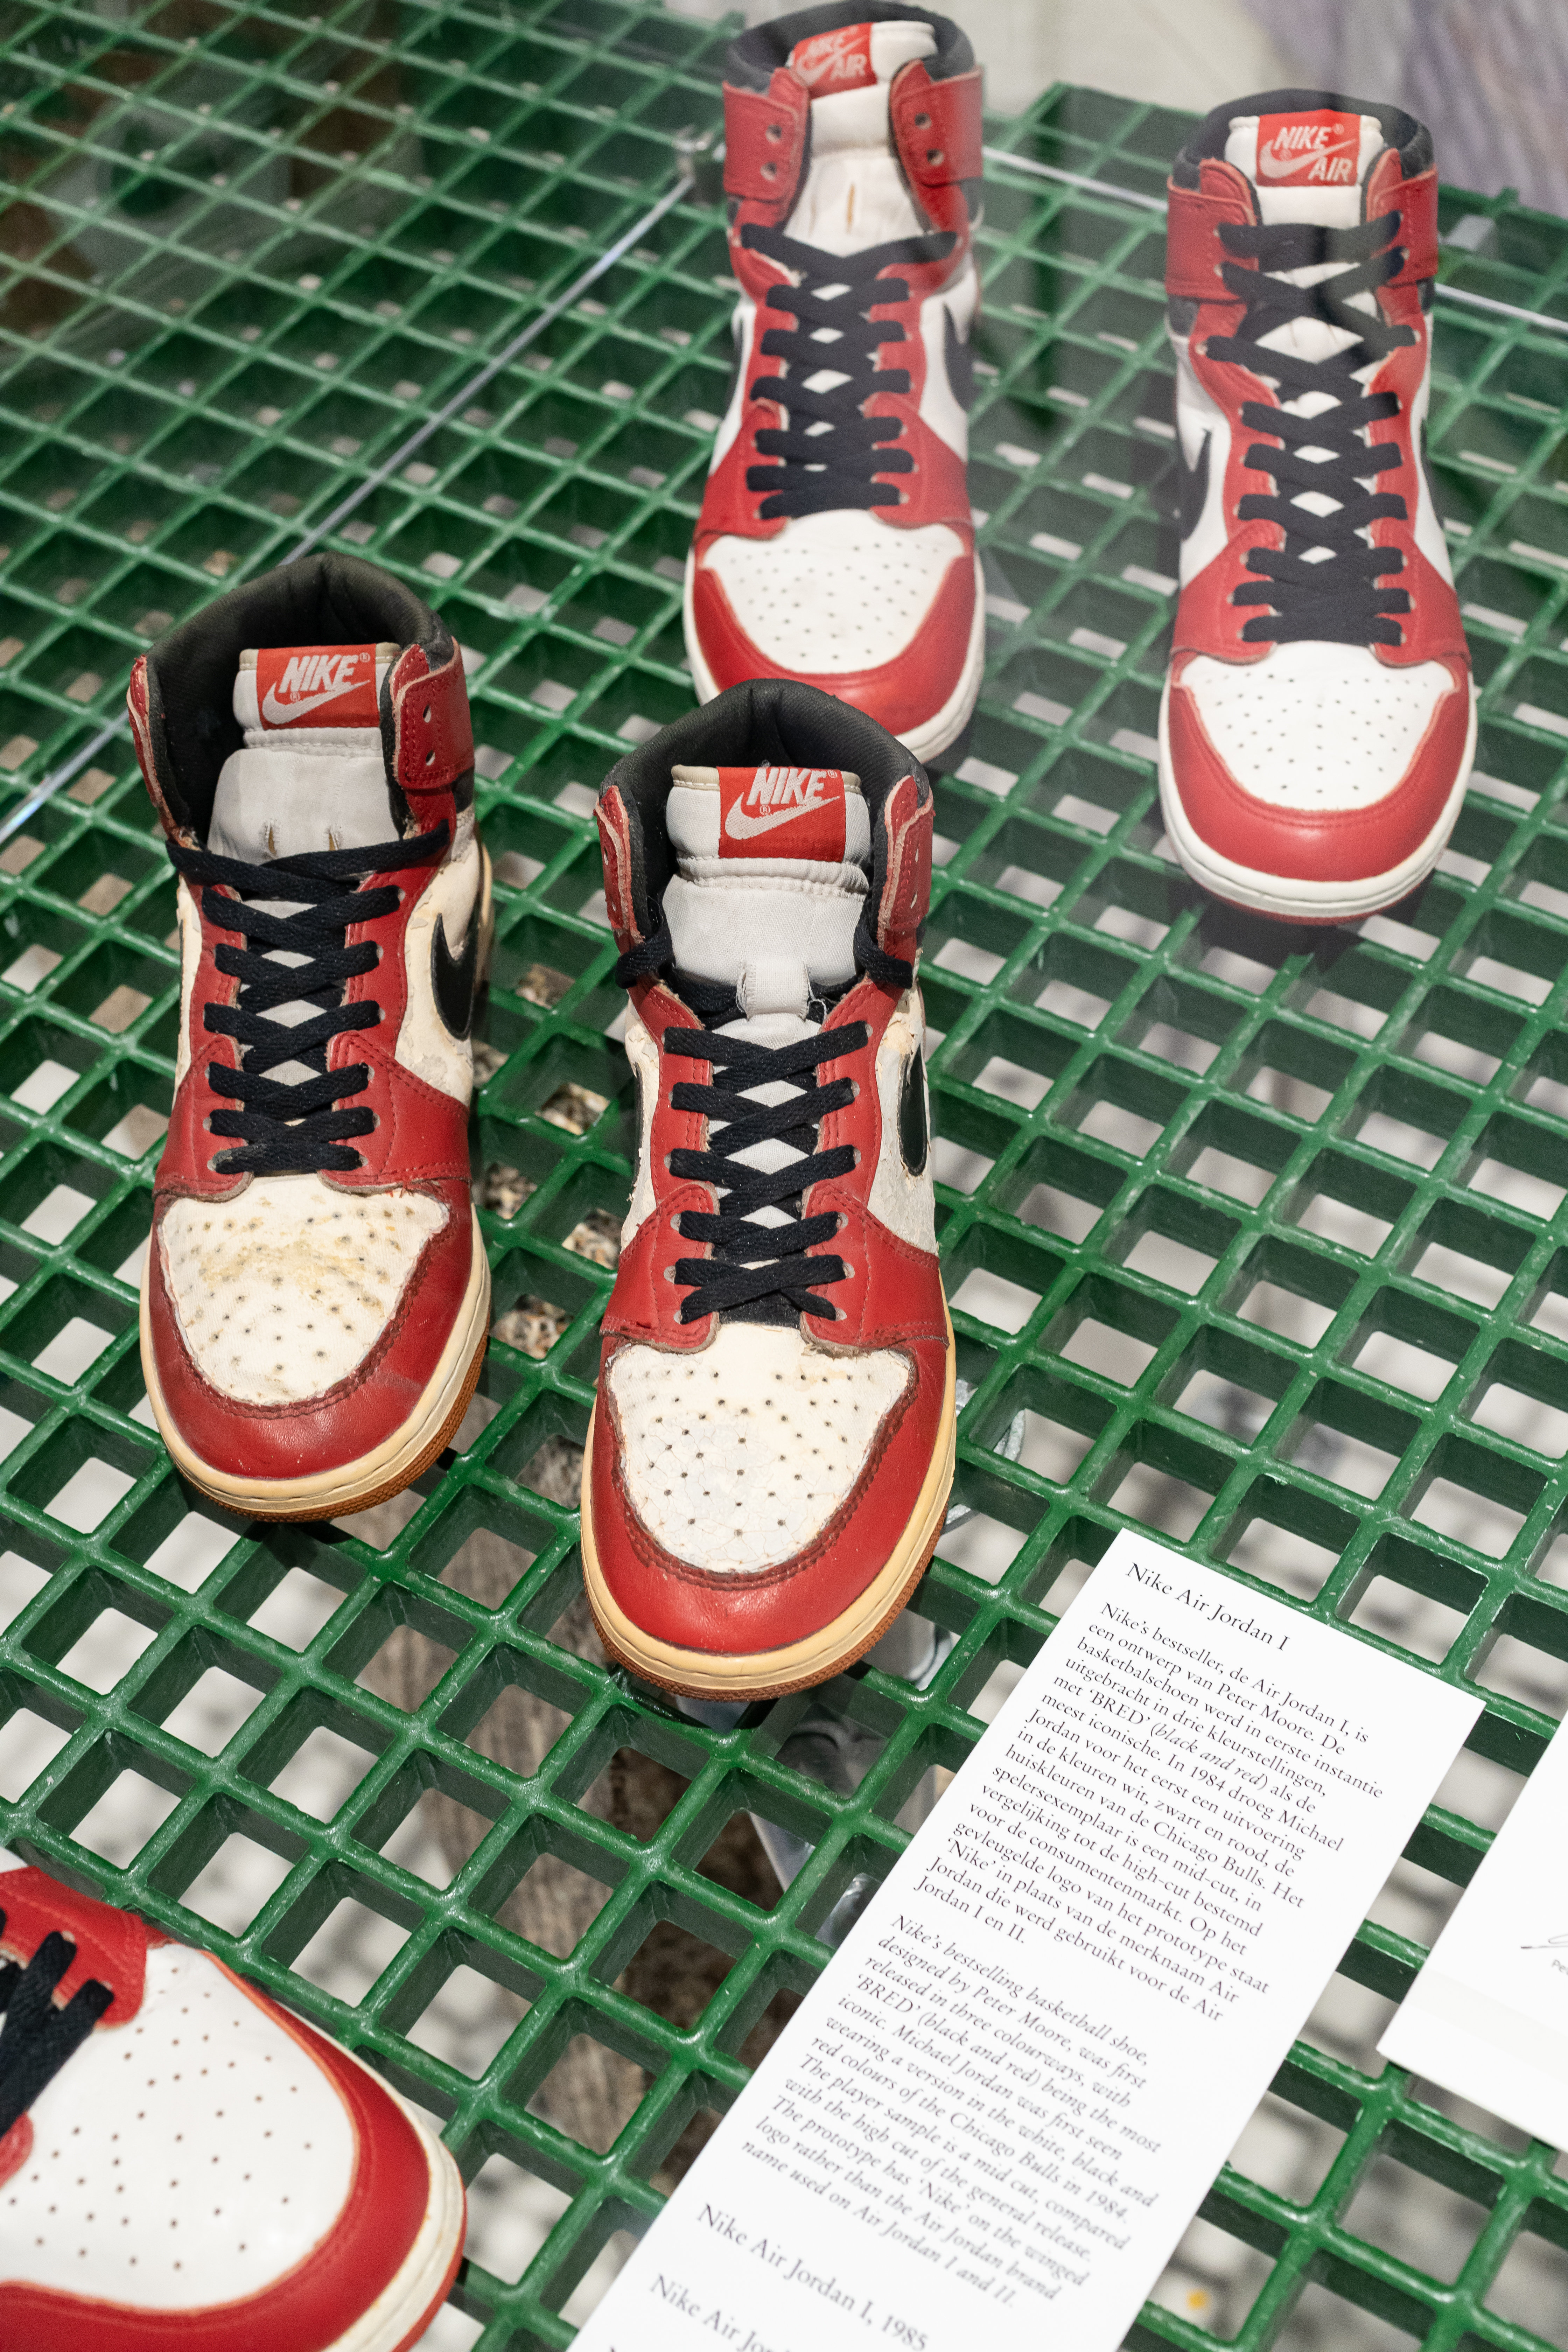 Sneakers unboxed Jordan 1 1984